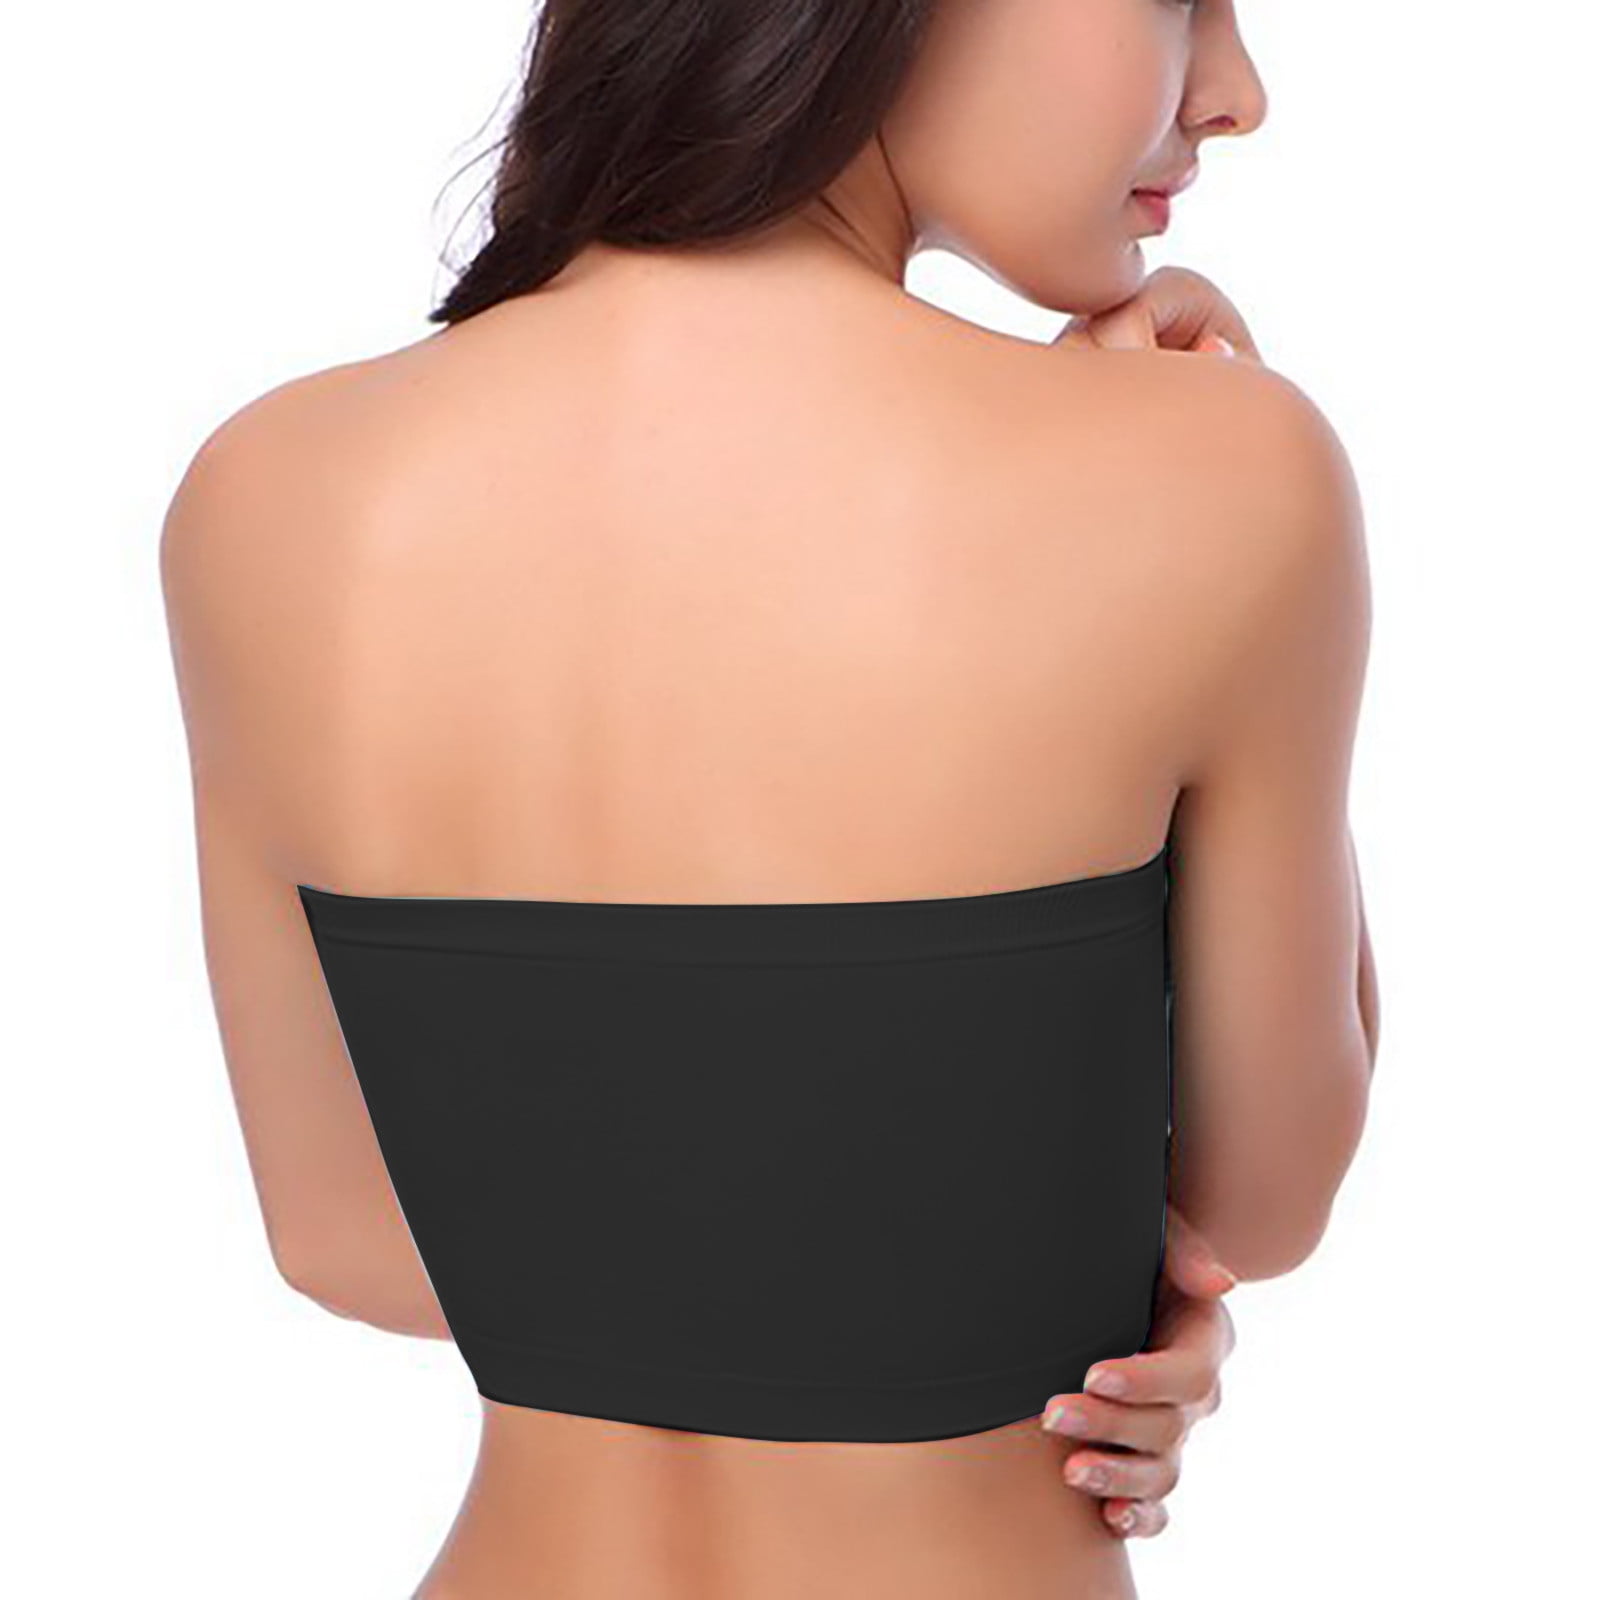 JGTDBPO One-Piece Strapless Bras For Women Plus Size Polished Anti